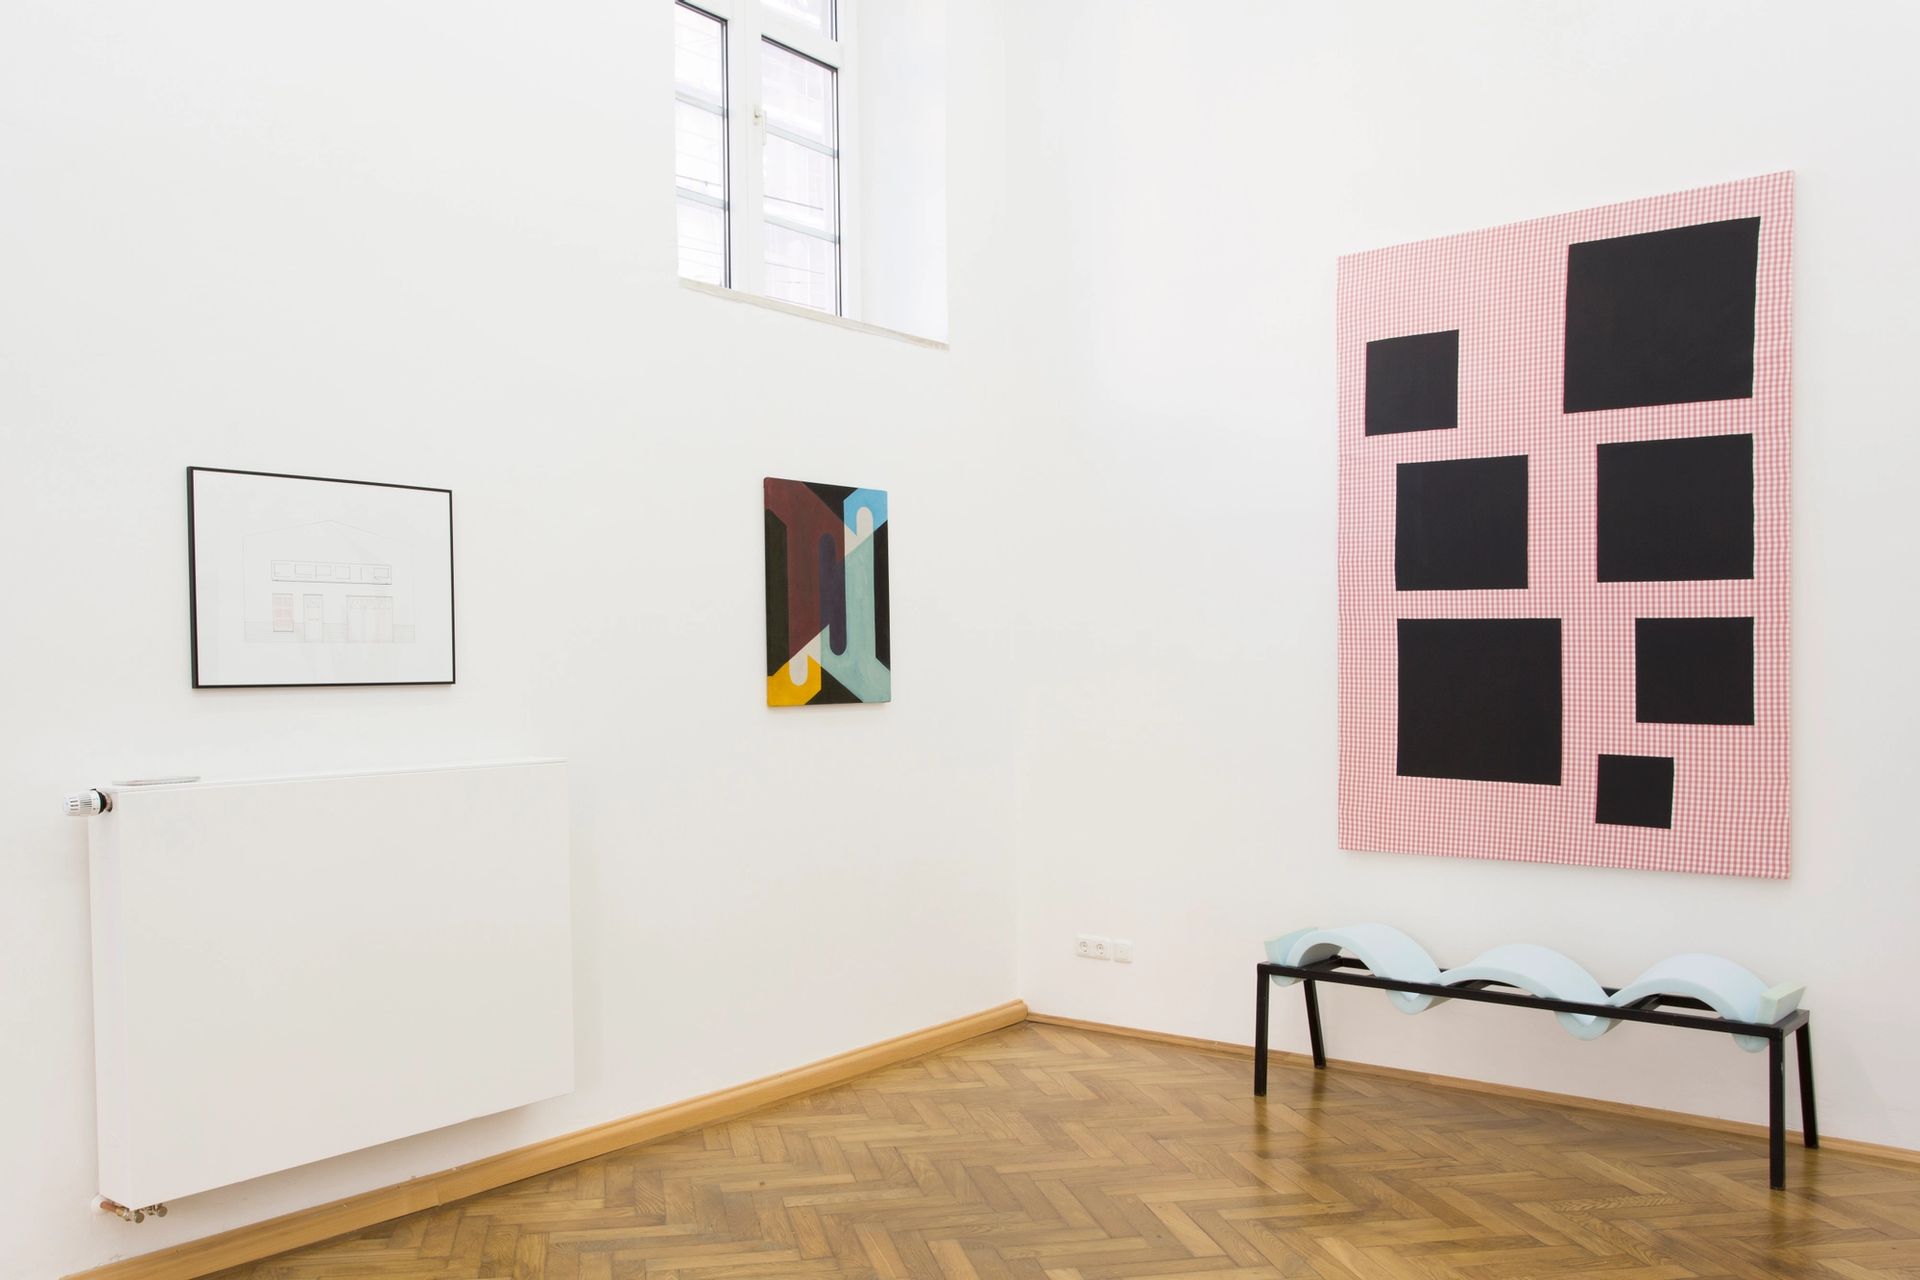 Installation view: Elvire Bonduelle, “waiting room #4”, 2015  (Elvire Bonduelle, Émile Vappereau, Nicholas Chardon)